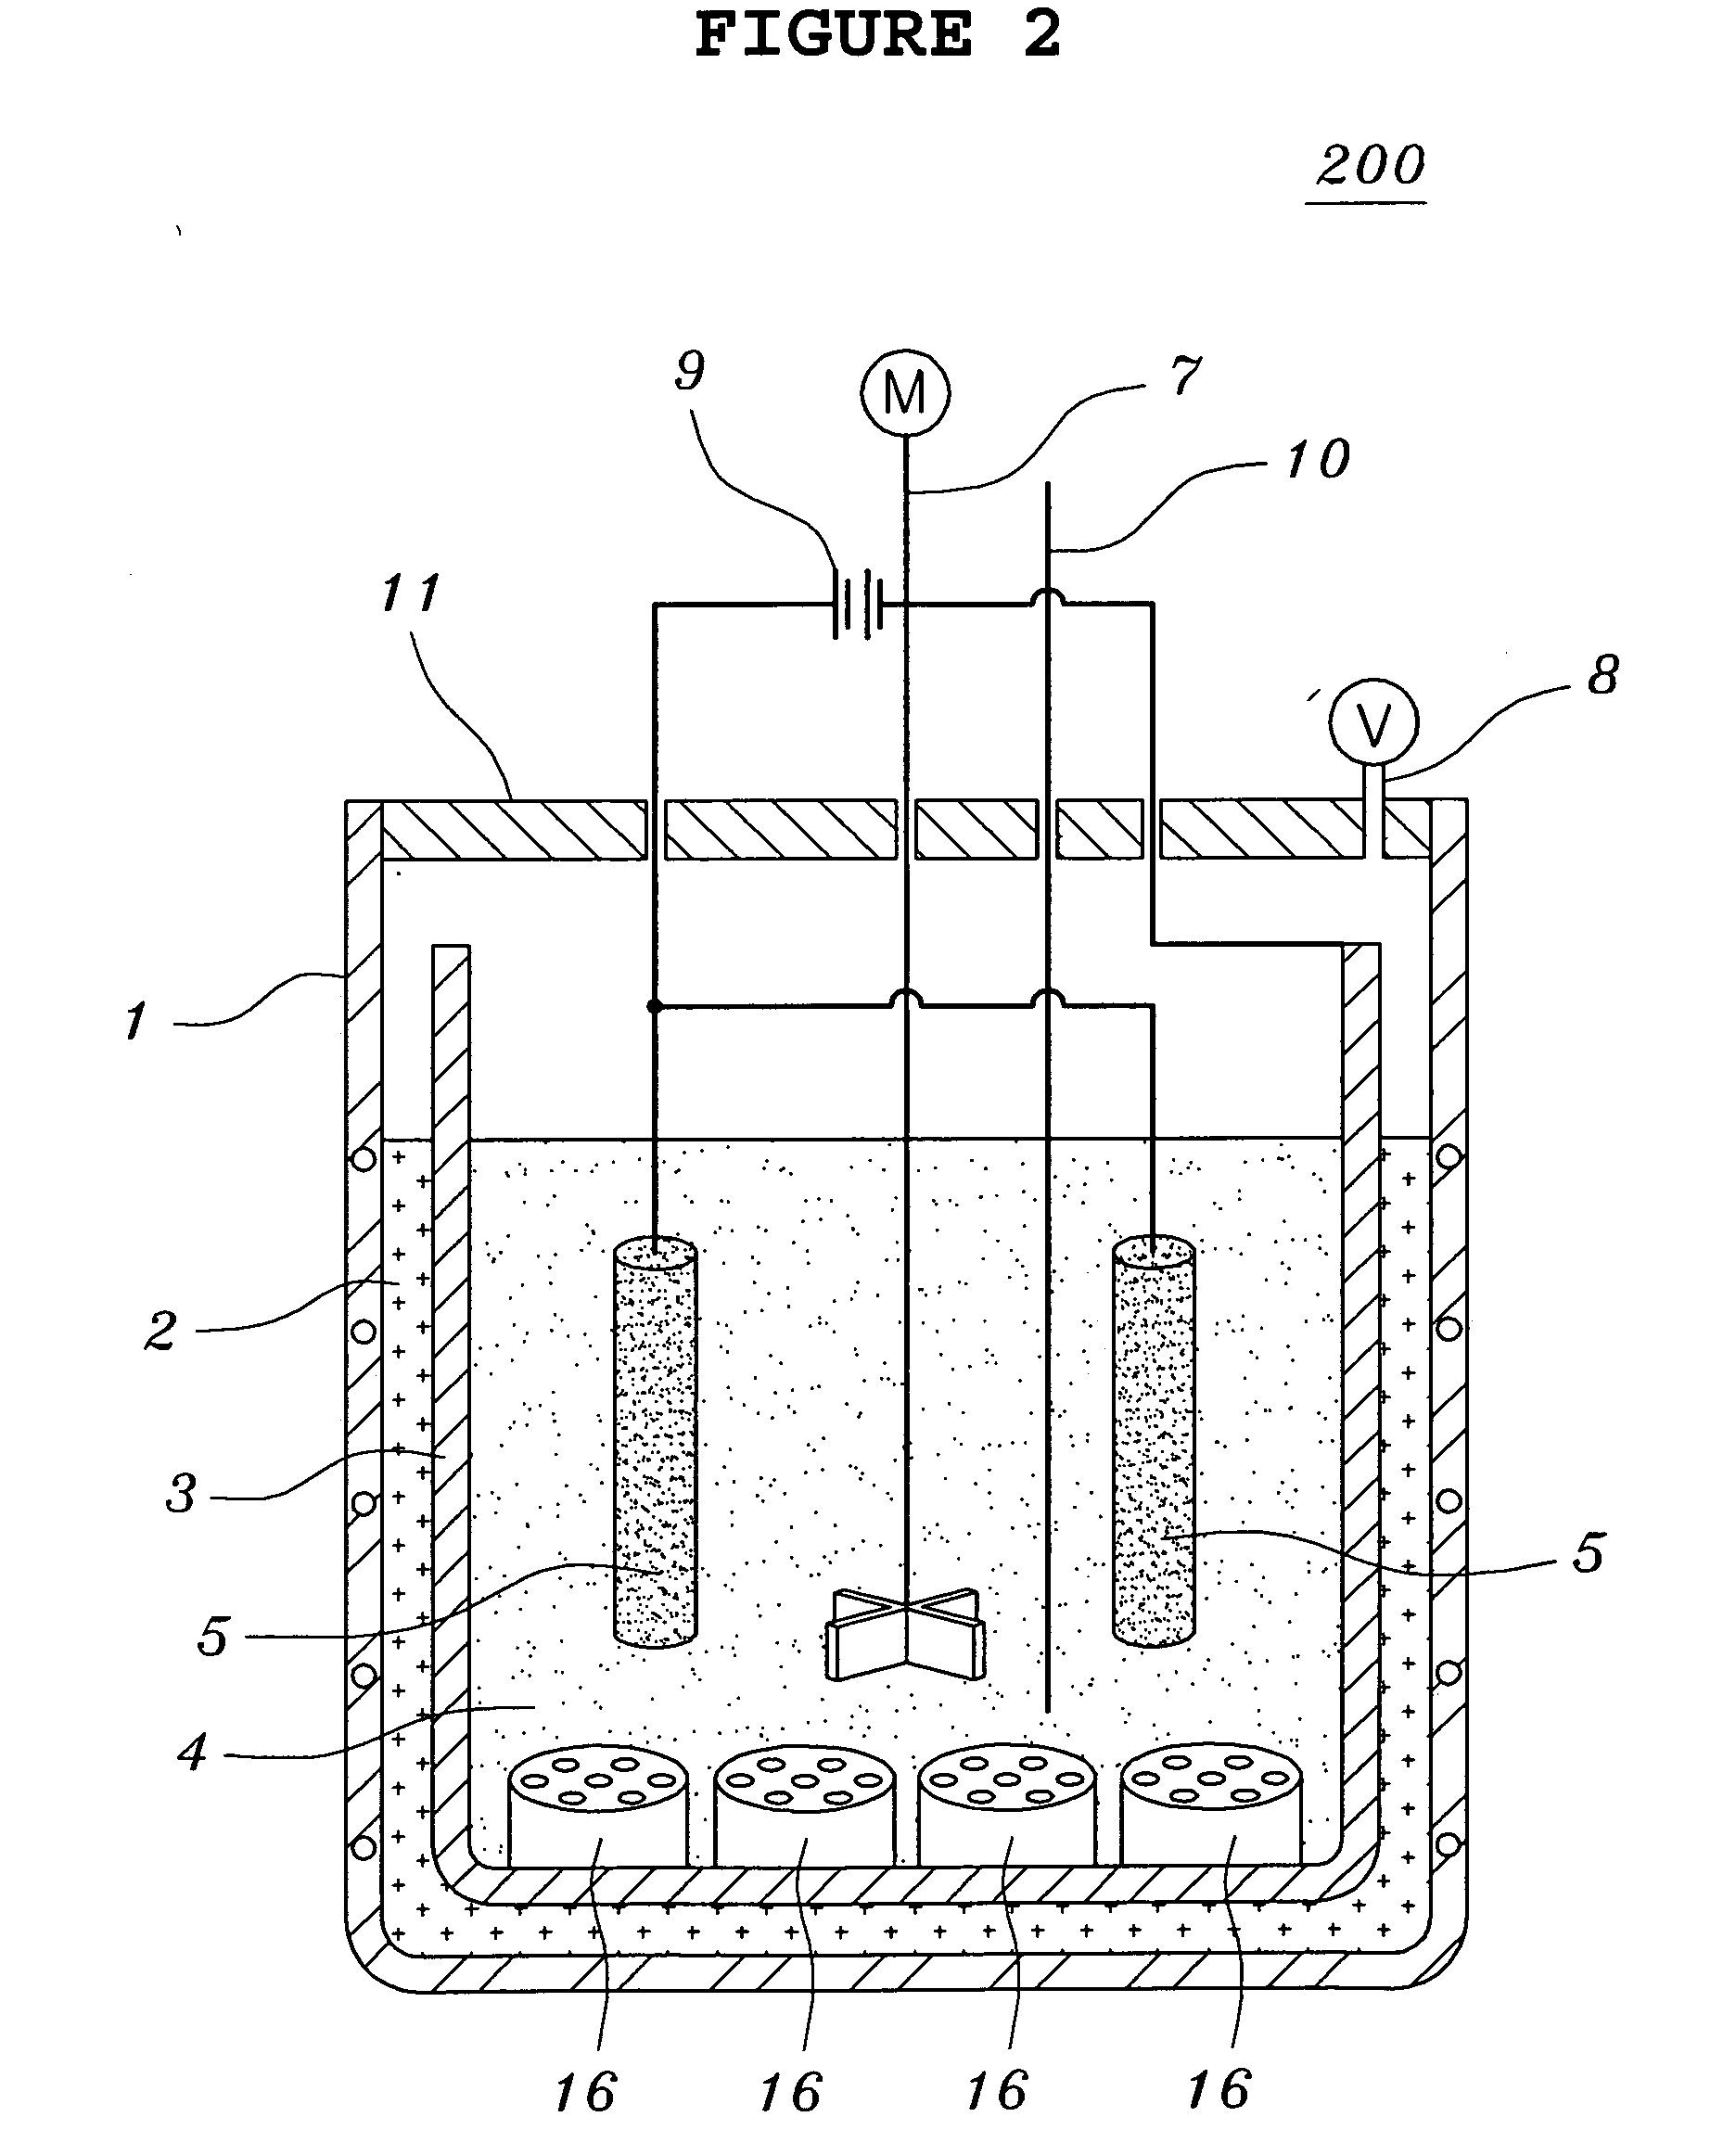 Method for preparing tantalum or niobium powders used for manufacturing capacitors